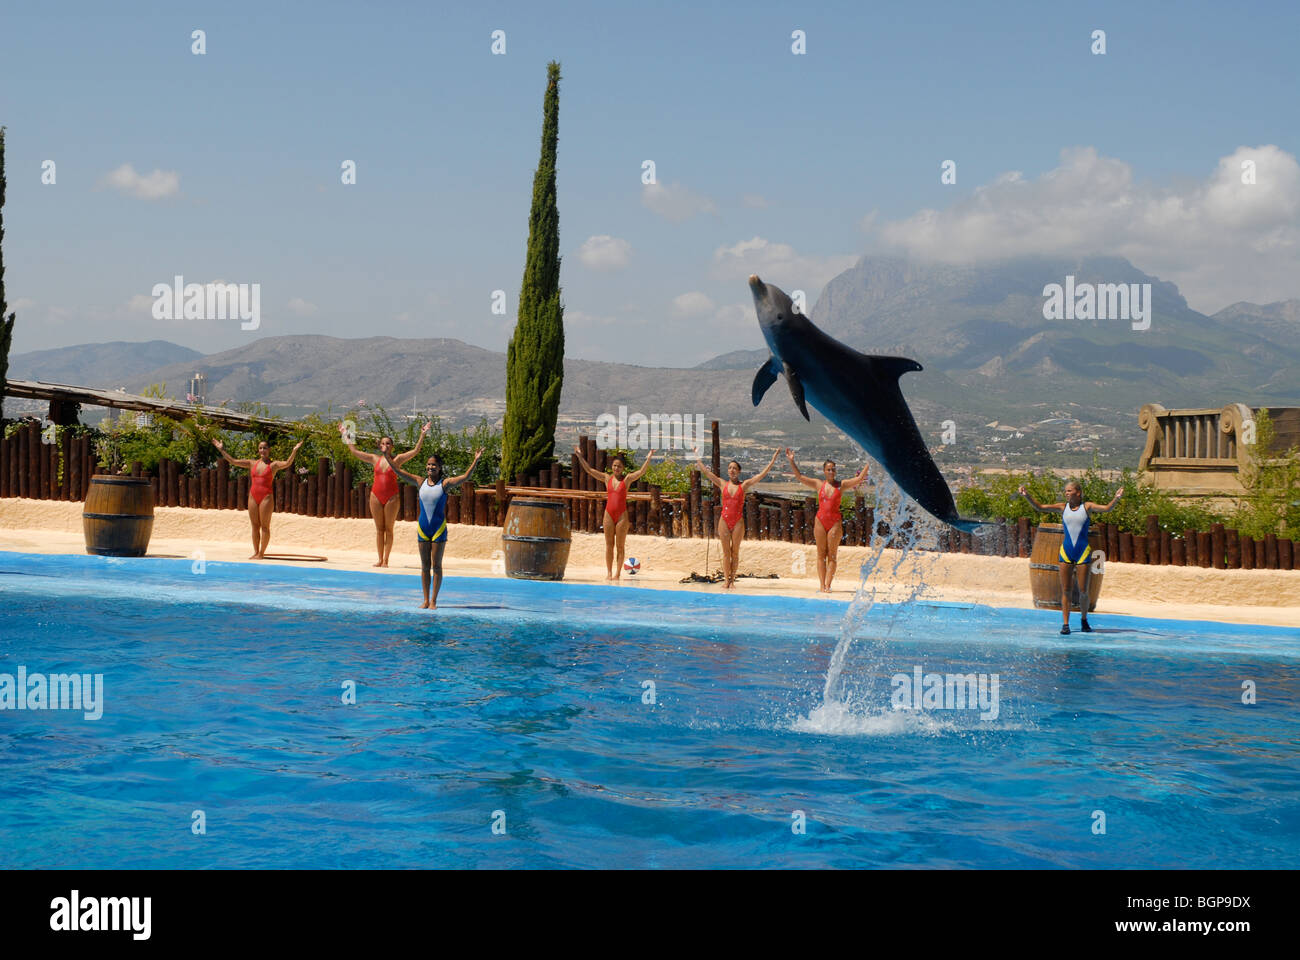 Salto de delfines durante el show, Mundomar, Benidorm, Alicante, Comunidad Valenciana, España Foto de stock